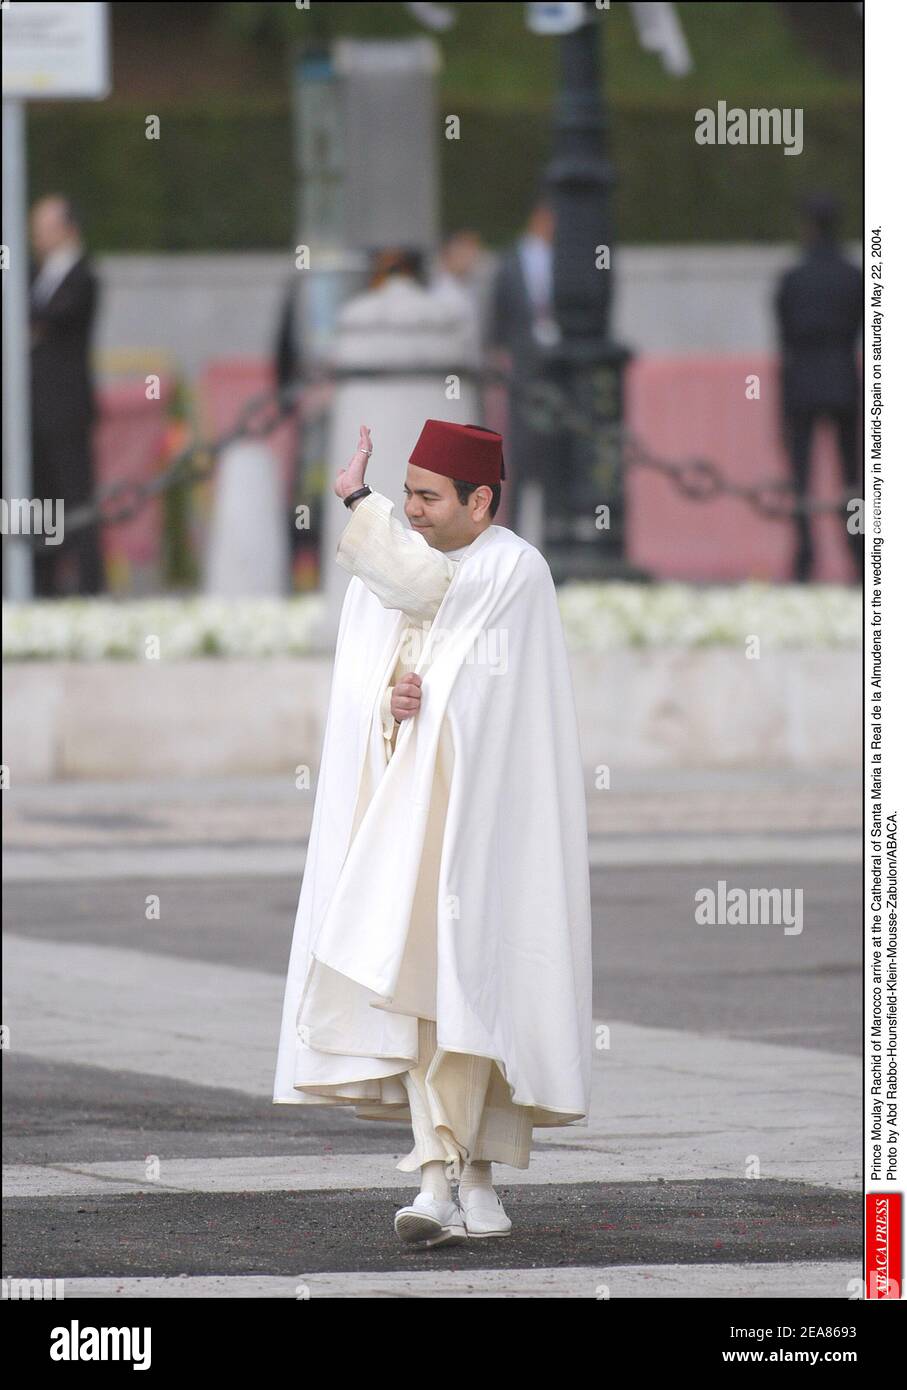 Il principe Moulay Rachid del Marocco arriva alla Cattedrale di Santa Maria la Real de la Almudena per la cerimonia nuziale a Madrid-Spagna sabato 22 maggio 2004. Foto di Abd Rabbo-Hounsfield-Klein-Mousse-Zabulon/ABACA. Foto Stock